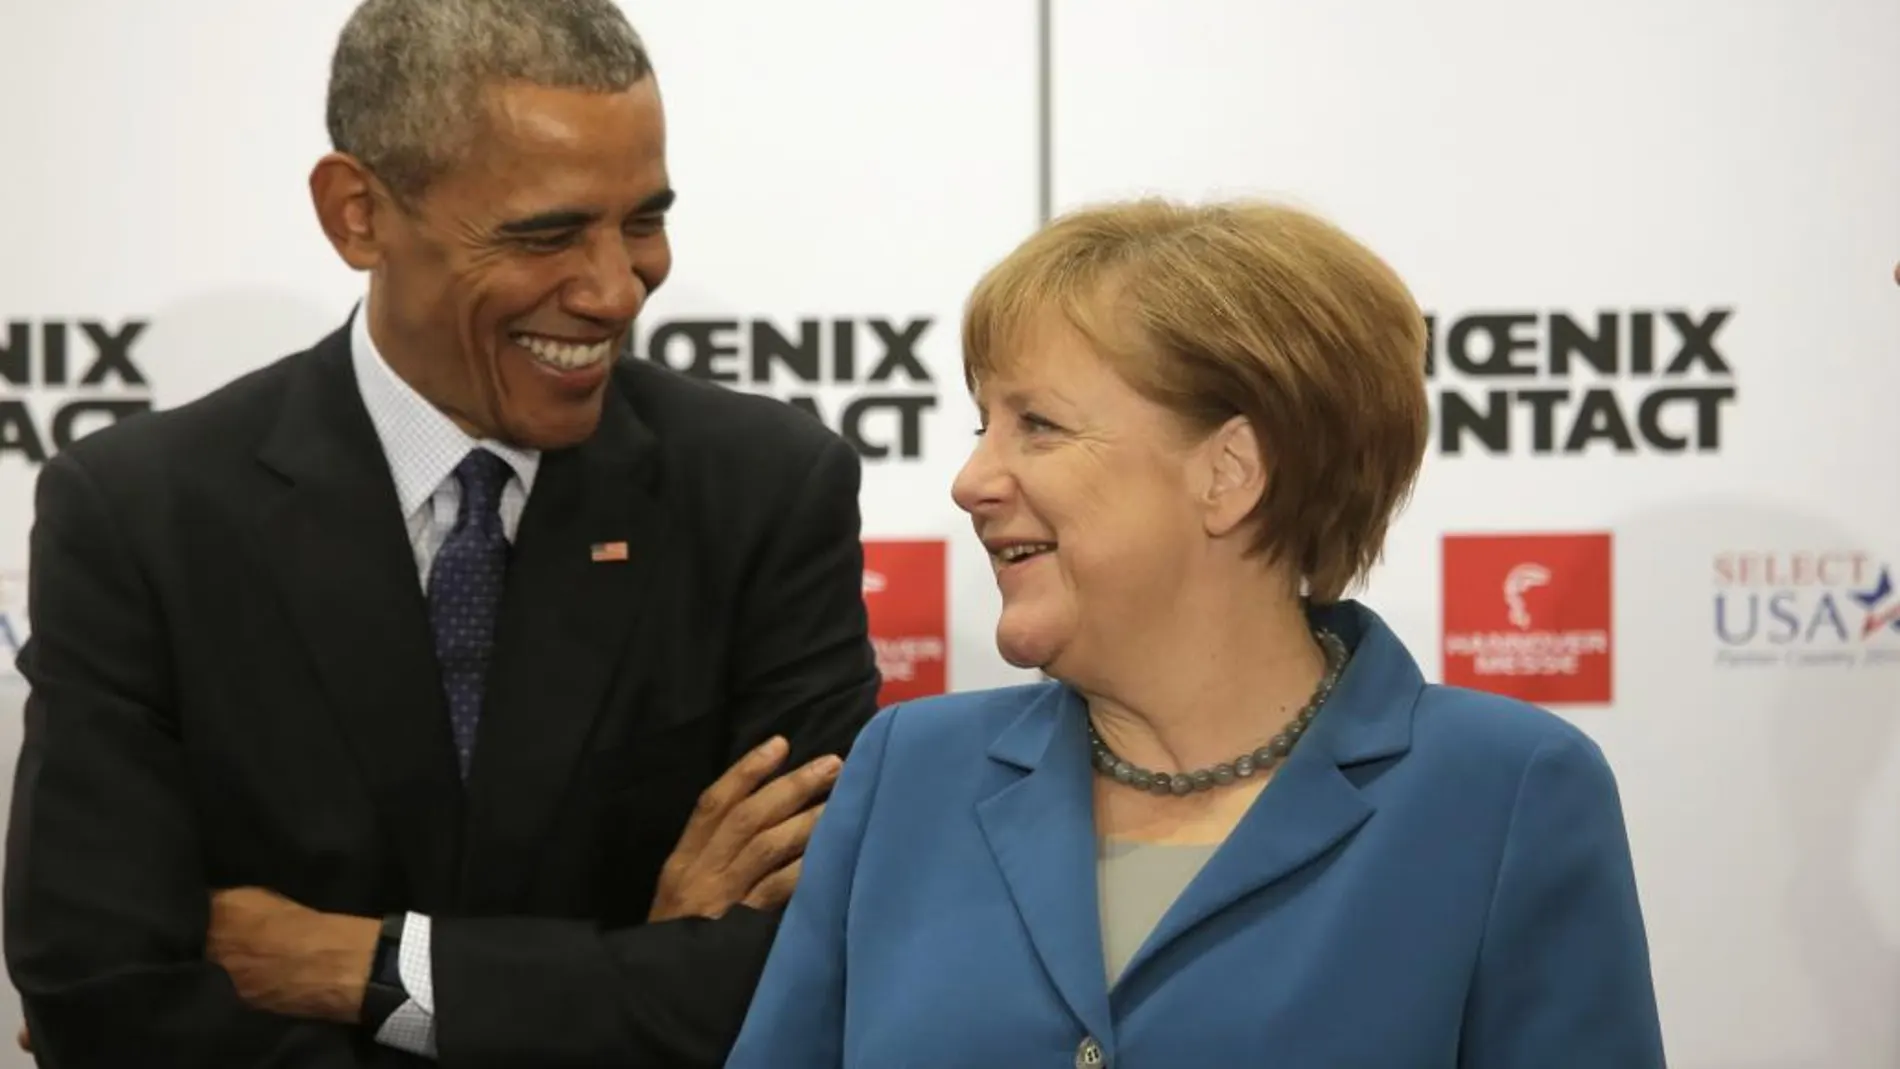 Barack Obama, junto a la canicller alemana, Angela Merkel, en la Hannover Messe, la mayor feria mundial de tecnología industrial